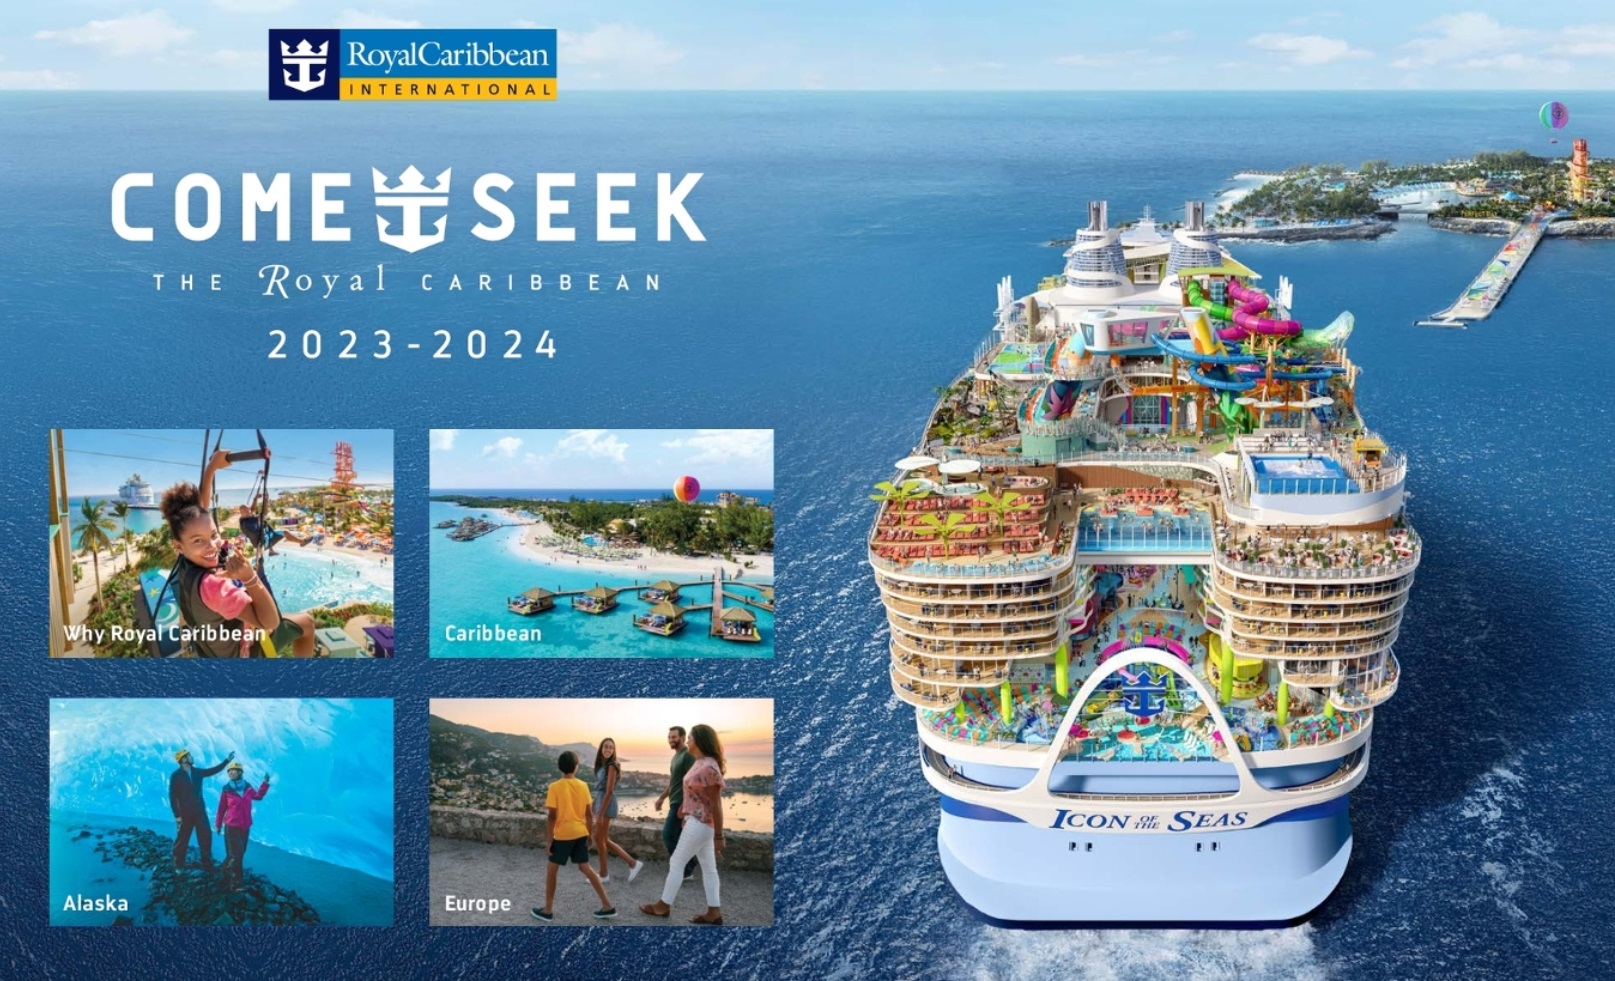 Brosura - Royal Caribbean Come & Seek 2023 - 2024